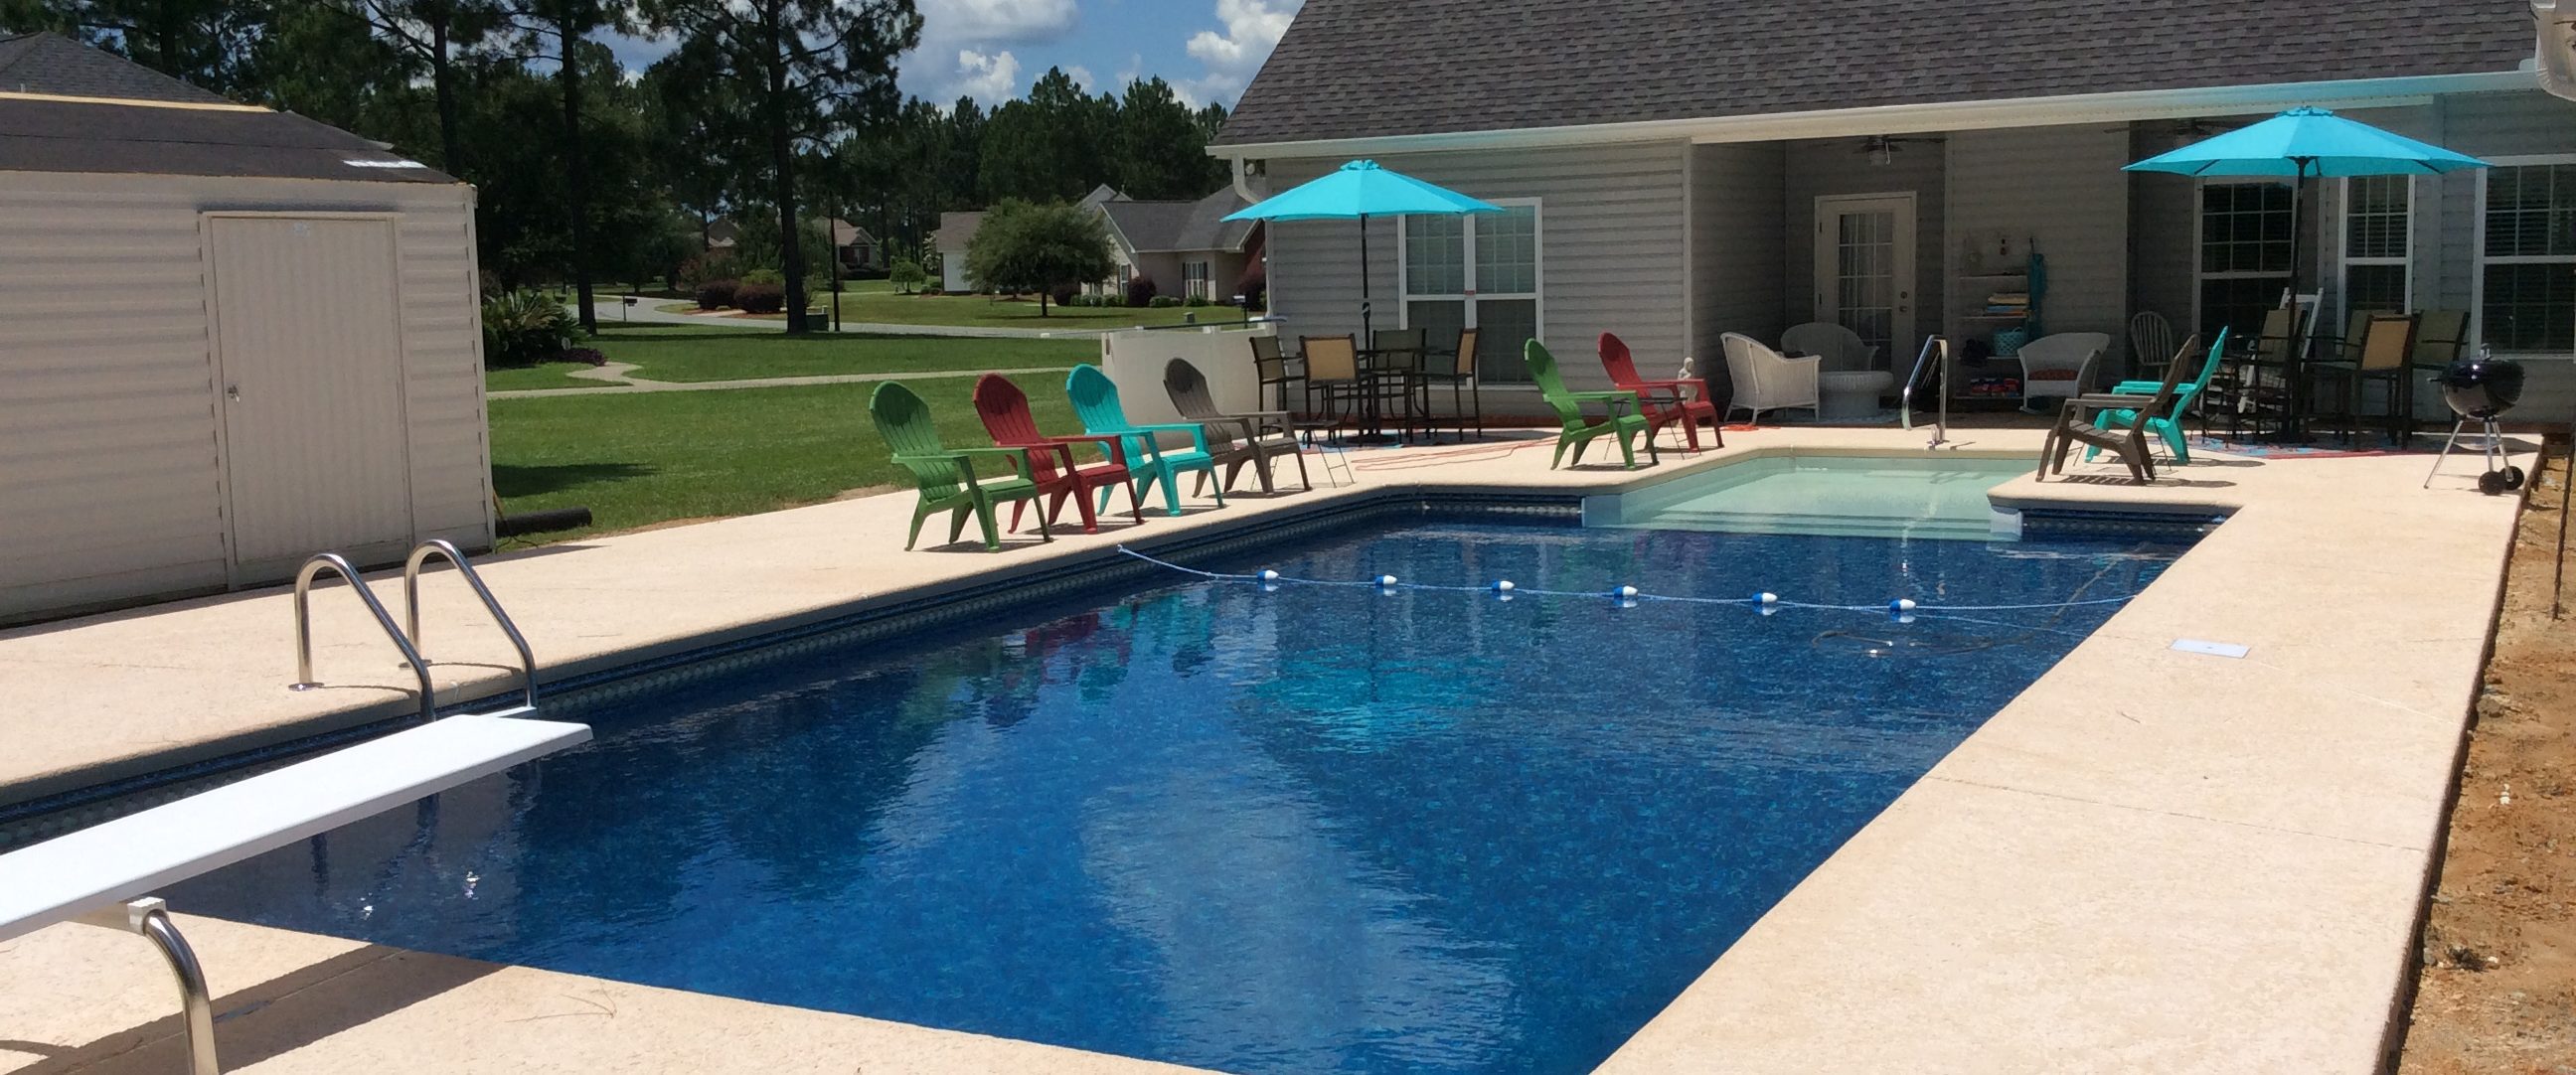 Pool furniture at Mid-State Pools & Spas, Inc.